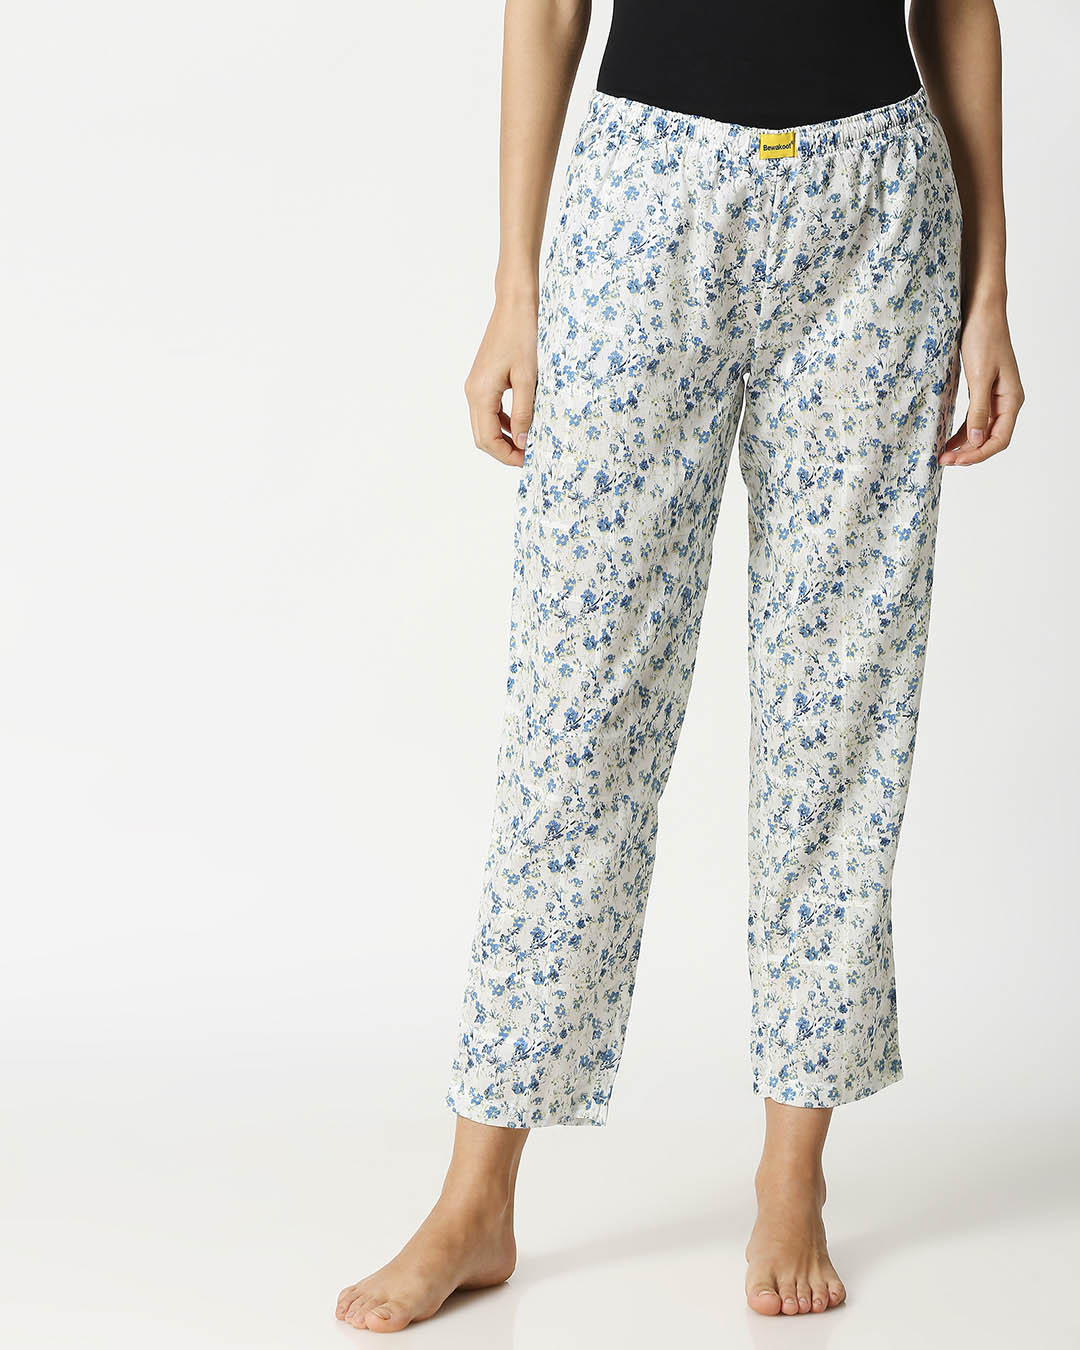 Shop Blue Floral Women's Pyjamas-Back